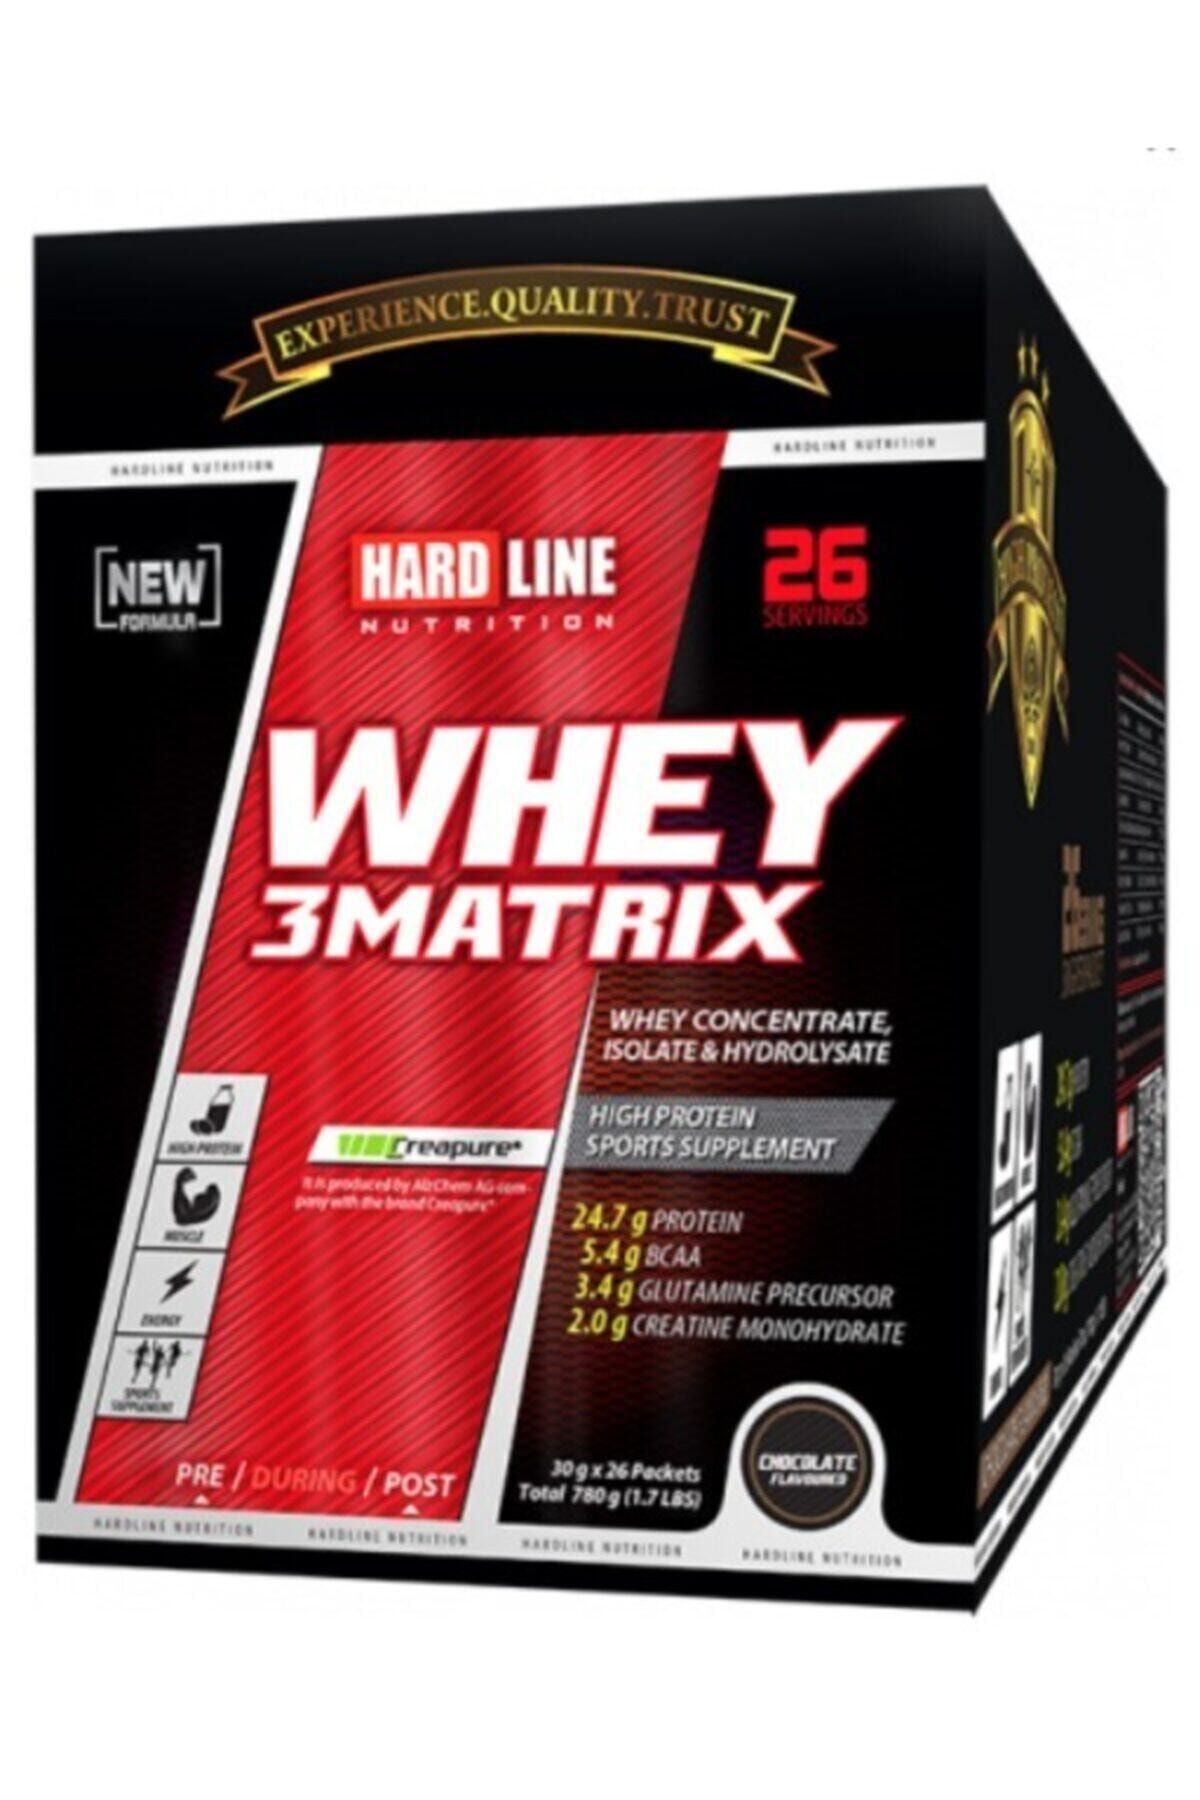 Hardline Whey 3matrix Protein 780 Gr 26 Şase-çilek